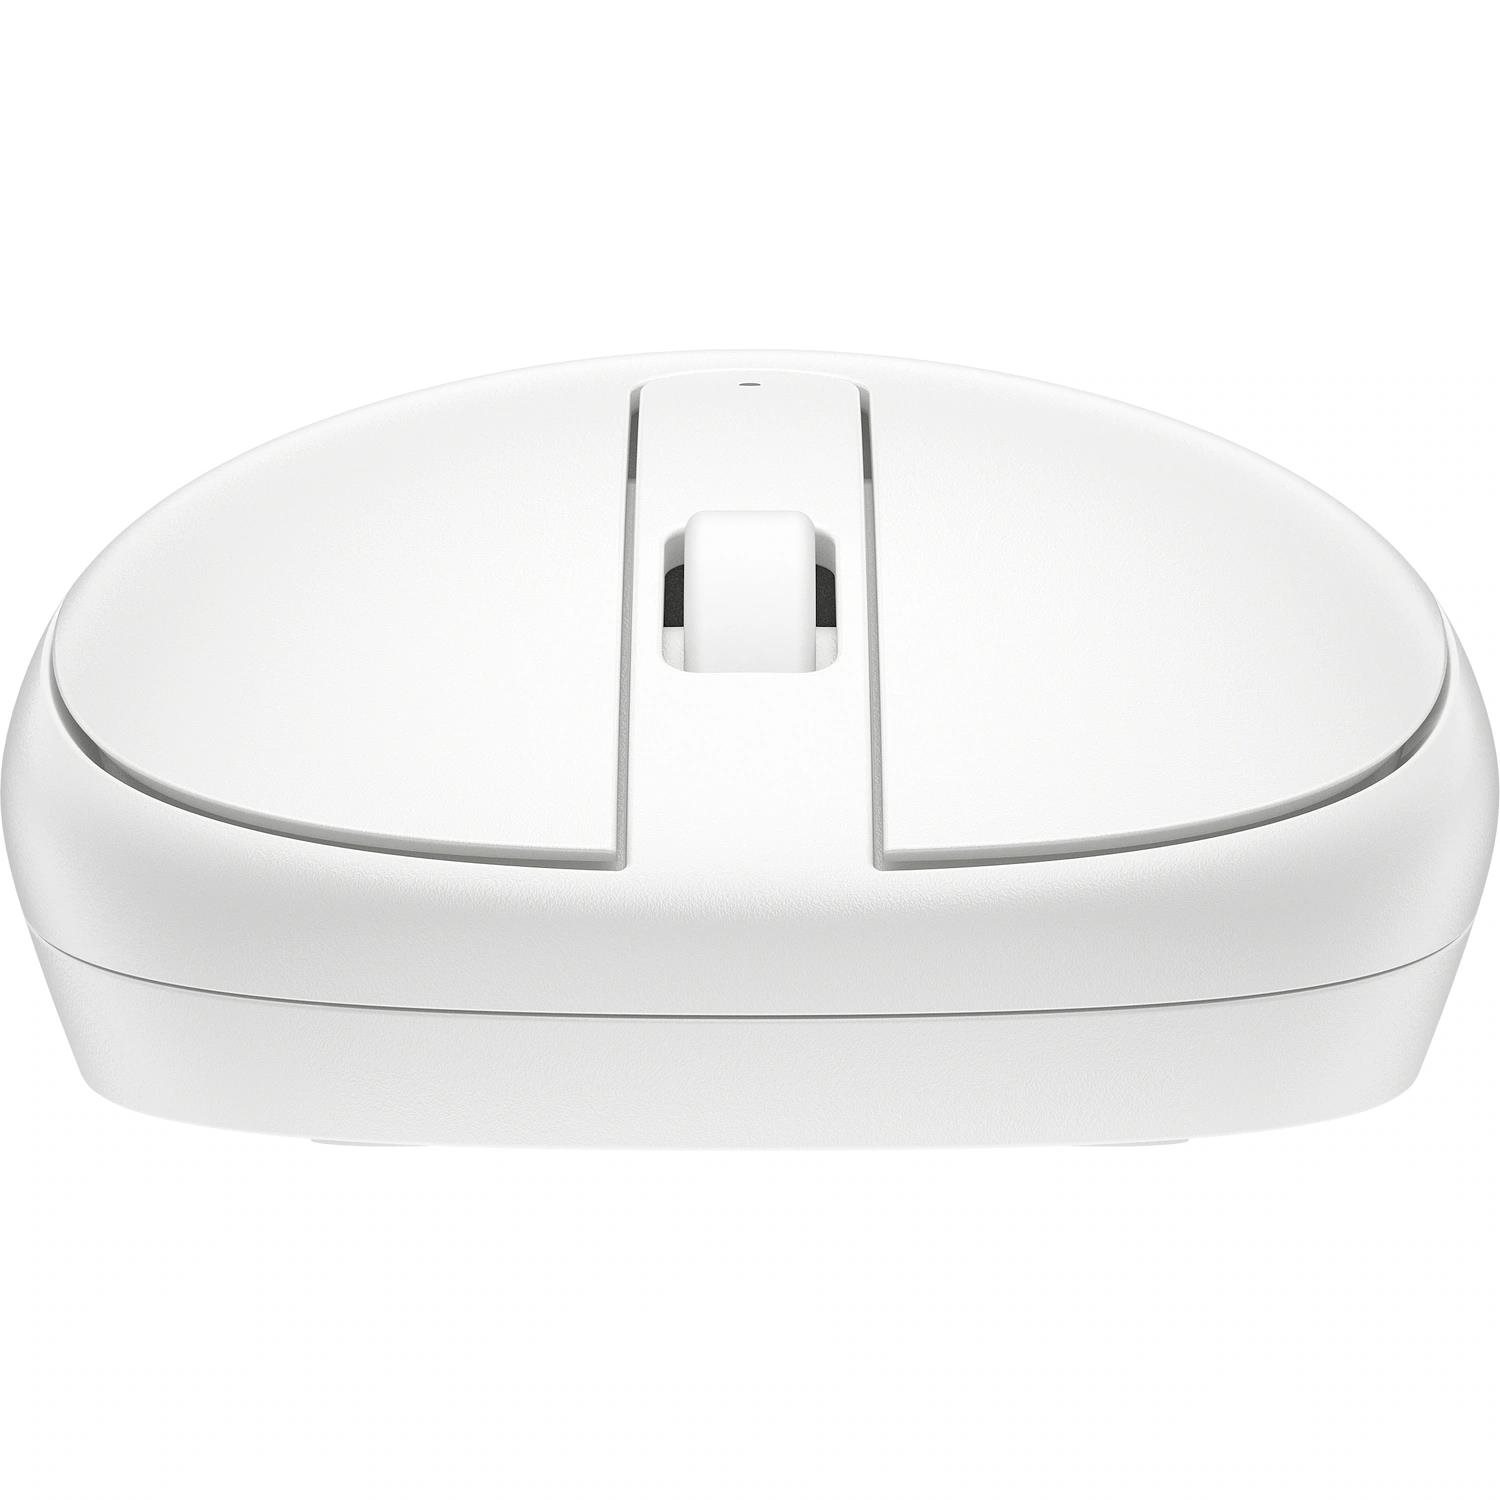 HP 240 Bluetooth Mouse White EURO - bezdrátová bluetooth myš1 